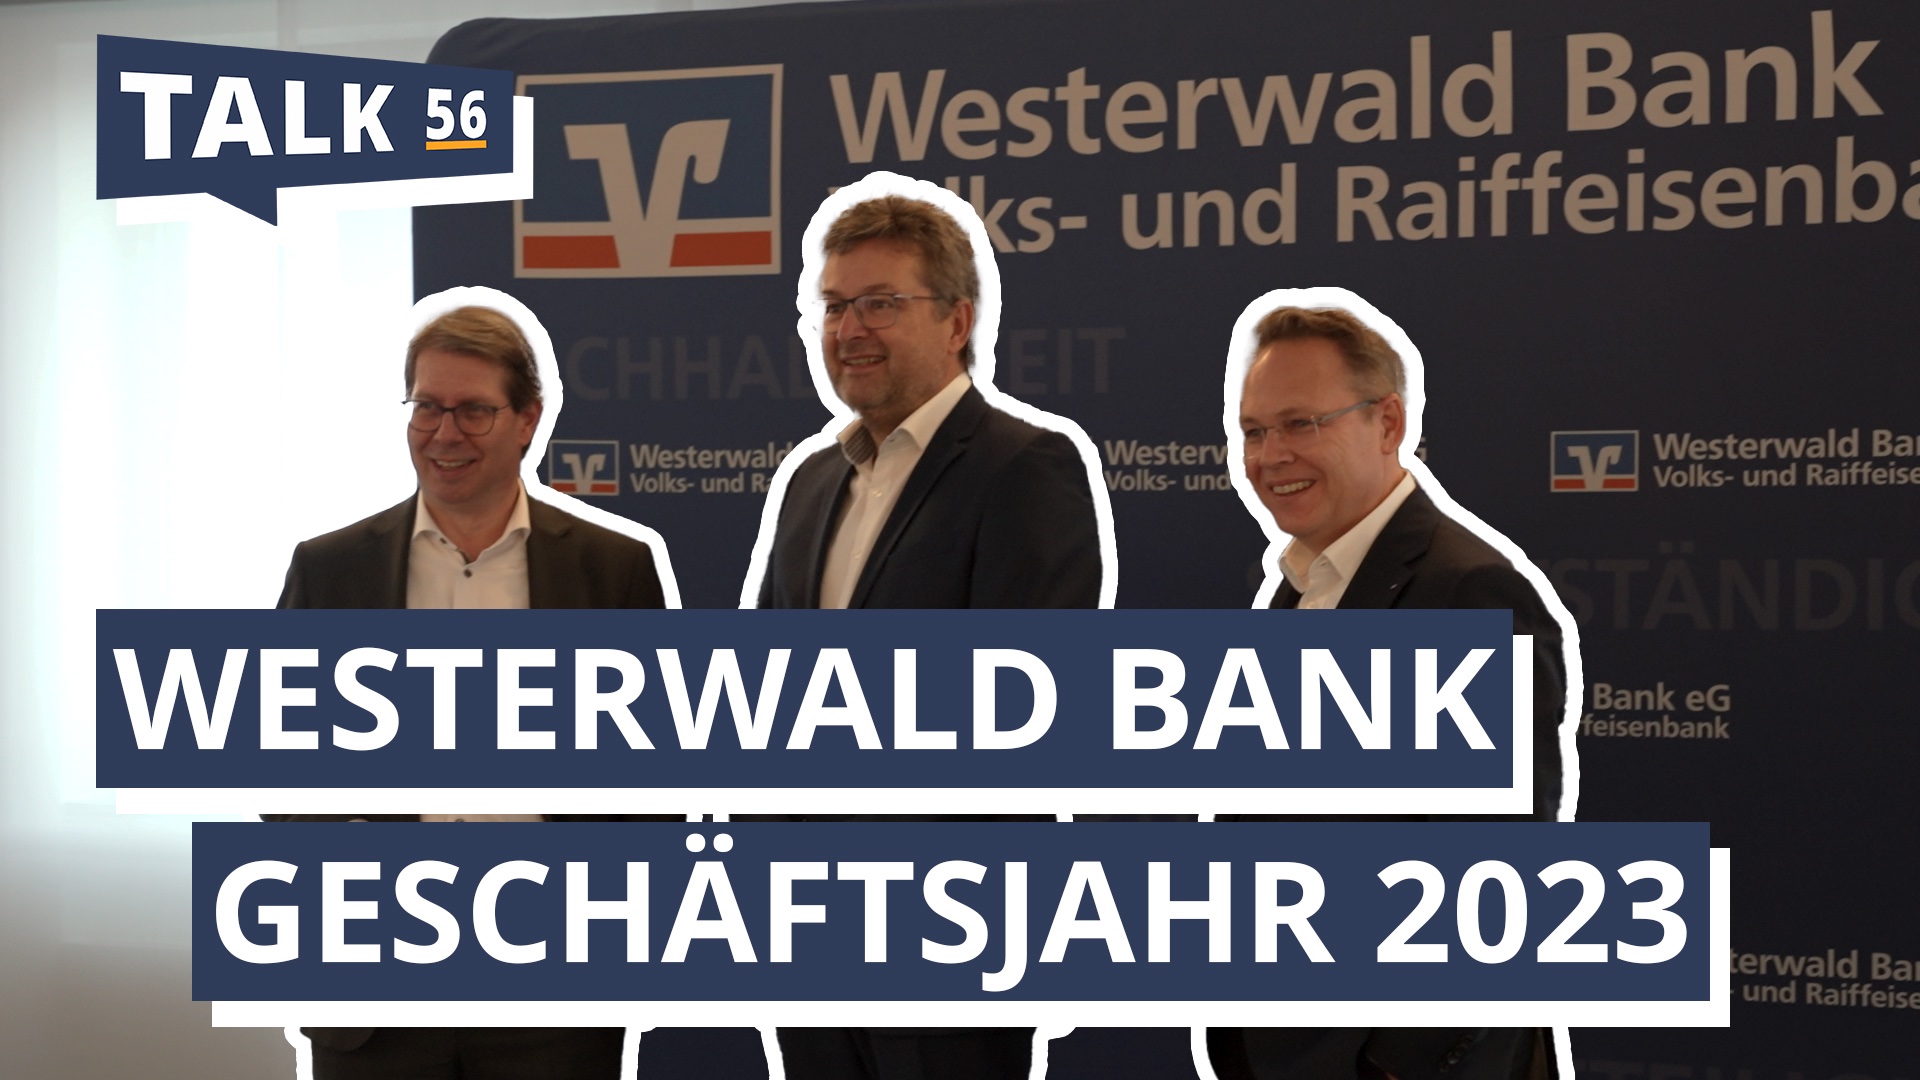 Westerwald Bank: Erfreuliches Geschäftsjahr, trotz schwacher Wirtschaft